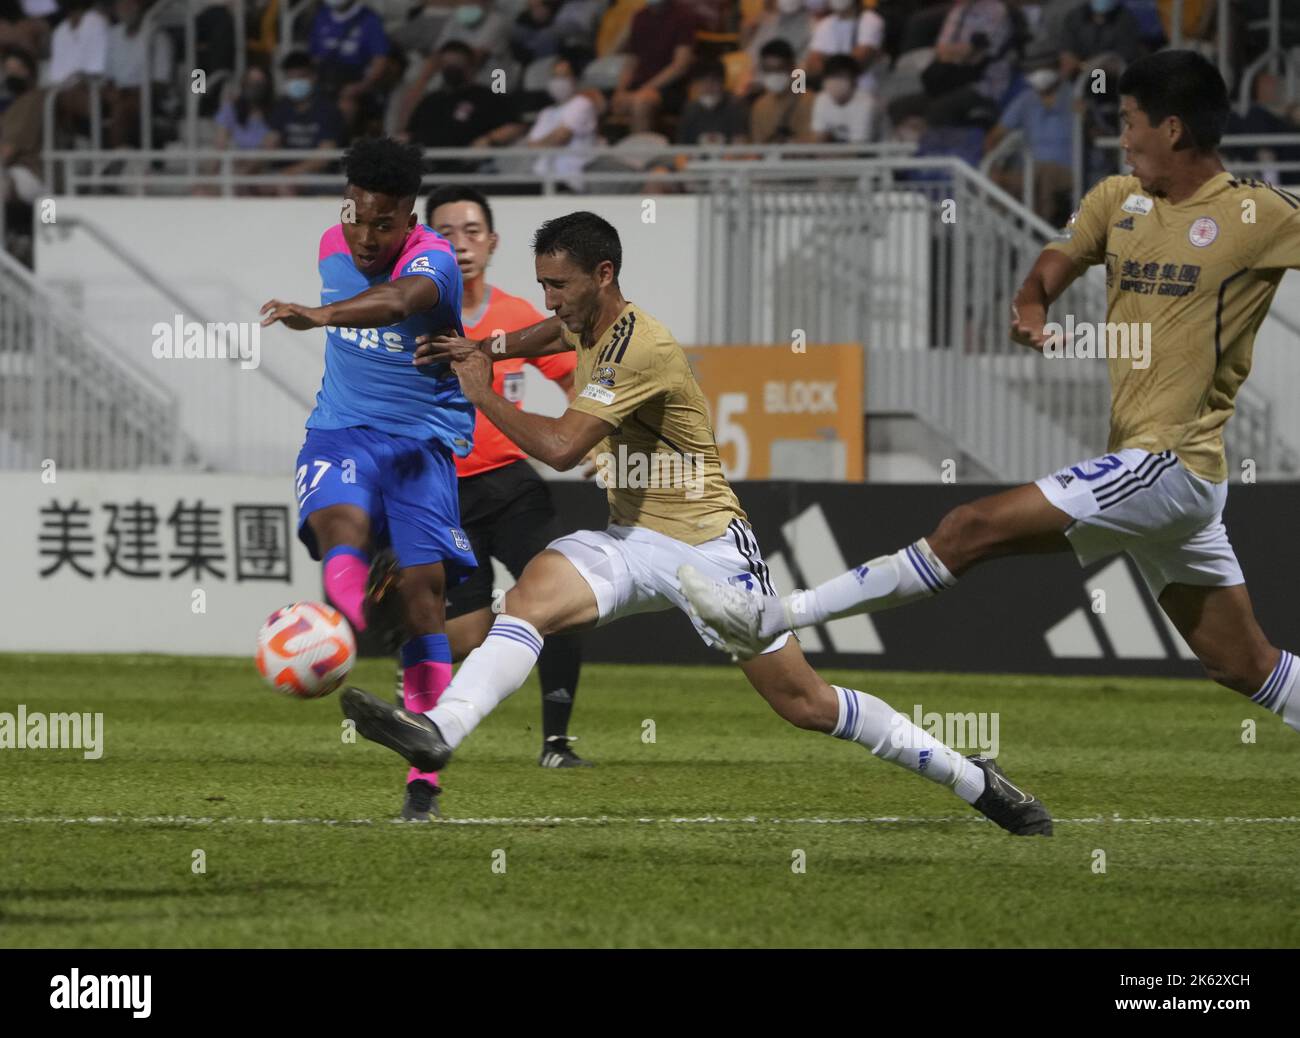 KitcheeHH Maddox Kong (L) in action during the match against Eastern Hong Kong Sapling Cup at Mongkok Stadium.  09OCT22   SCMP / Sam Tsang Stock Photo